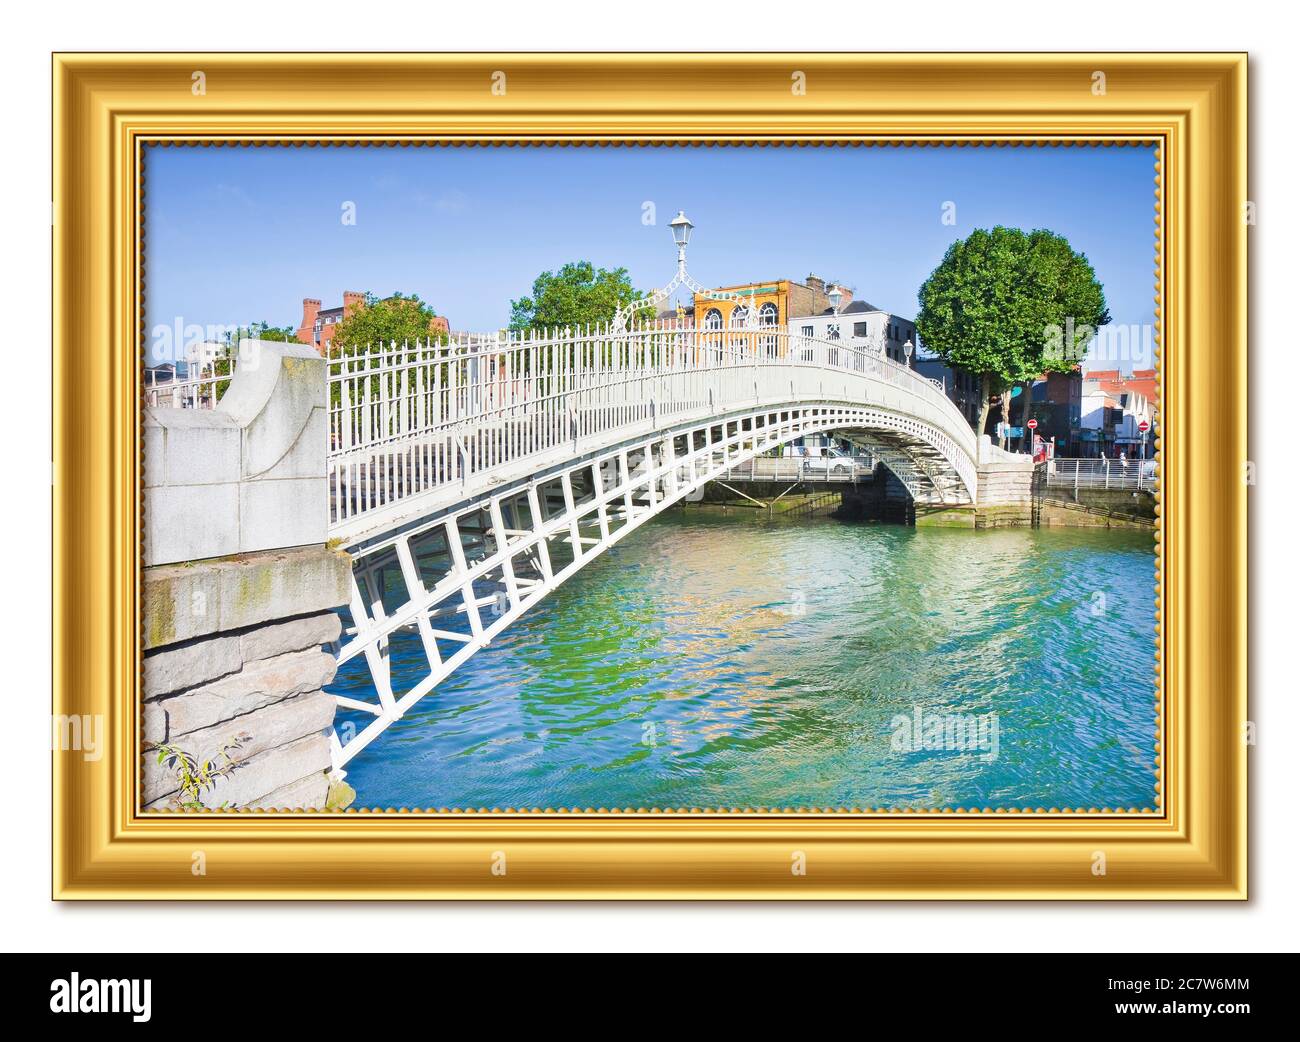 Die berühmteste Brücke in Dublin, die "Half Penny Bridge" genannt wird, wegen der Maut für die Passage - goldenes Holzrahmenkonzept Stockfoto